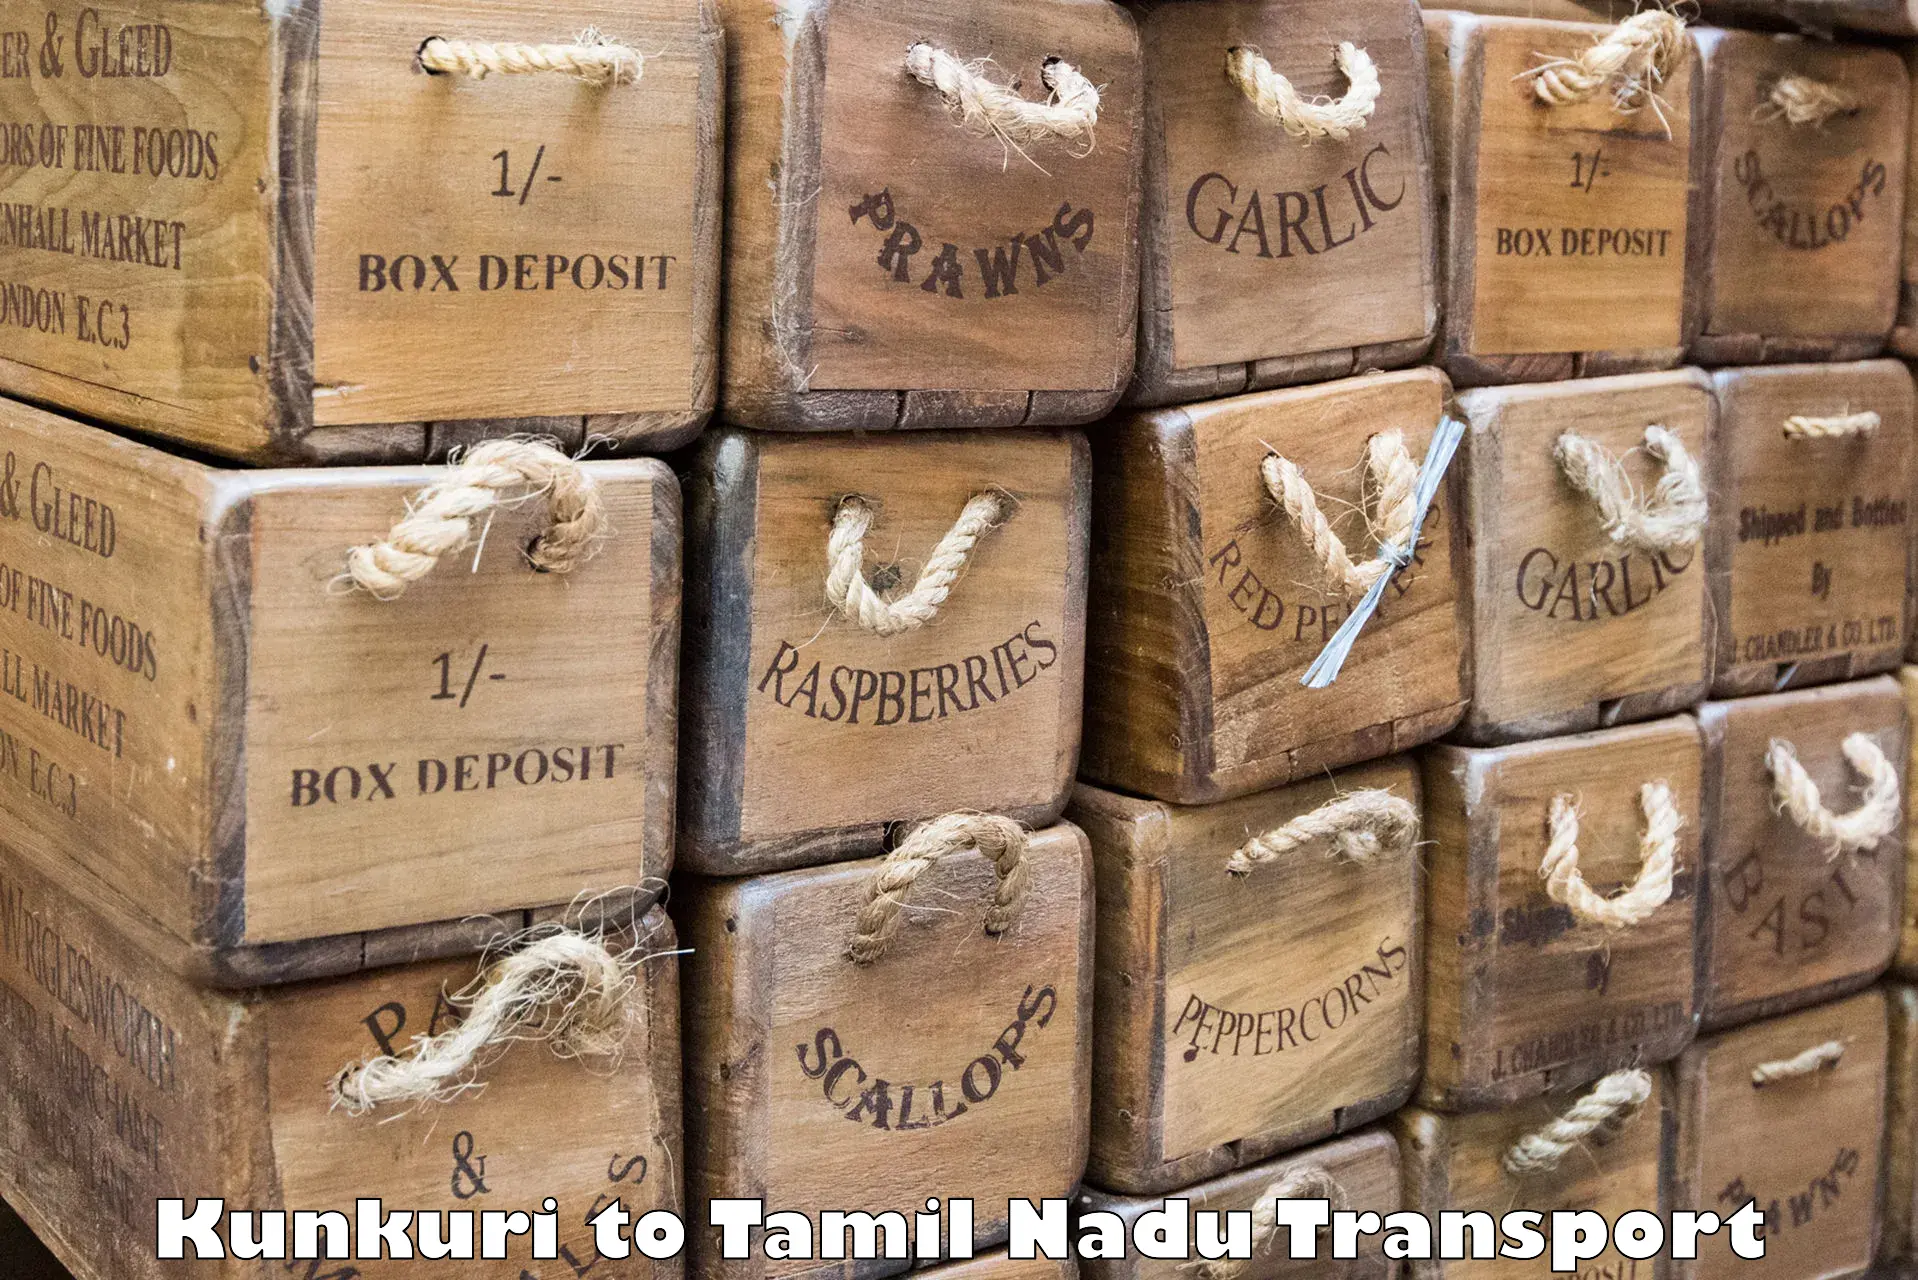 Luggage transport services Kunkuri to Tamil Nadu Veterinary and Animal Sciences University Chennai